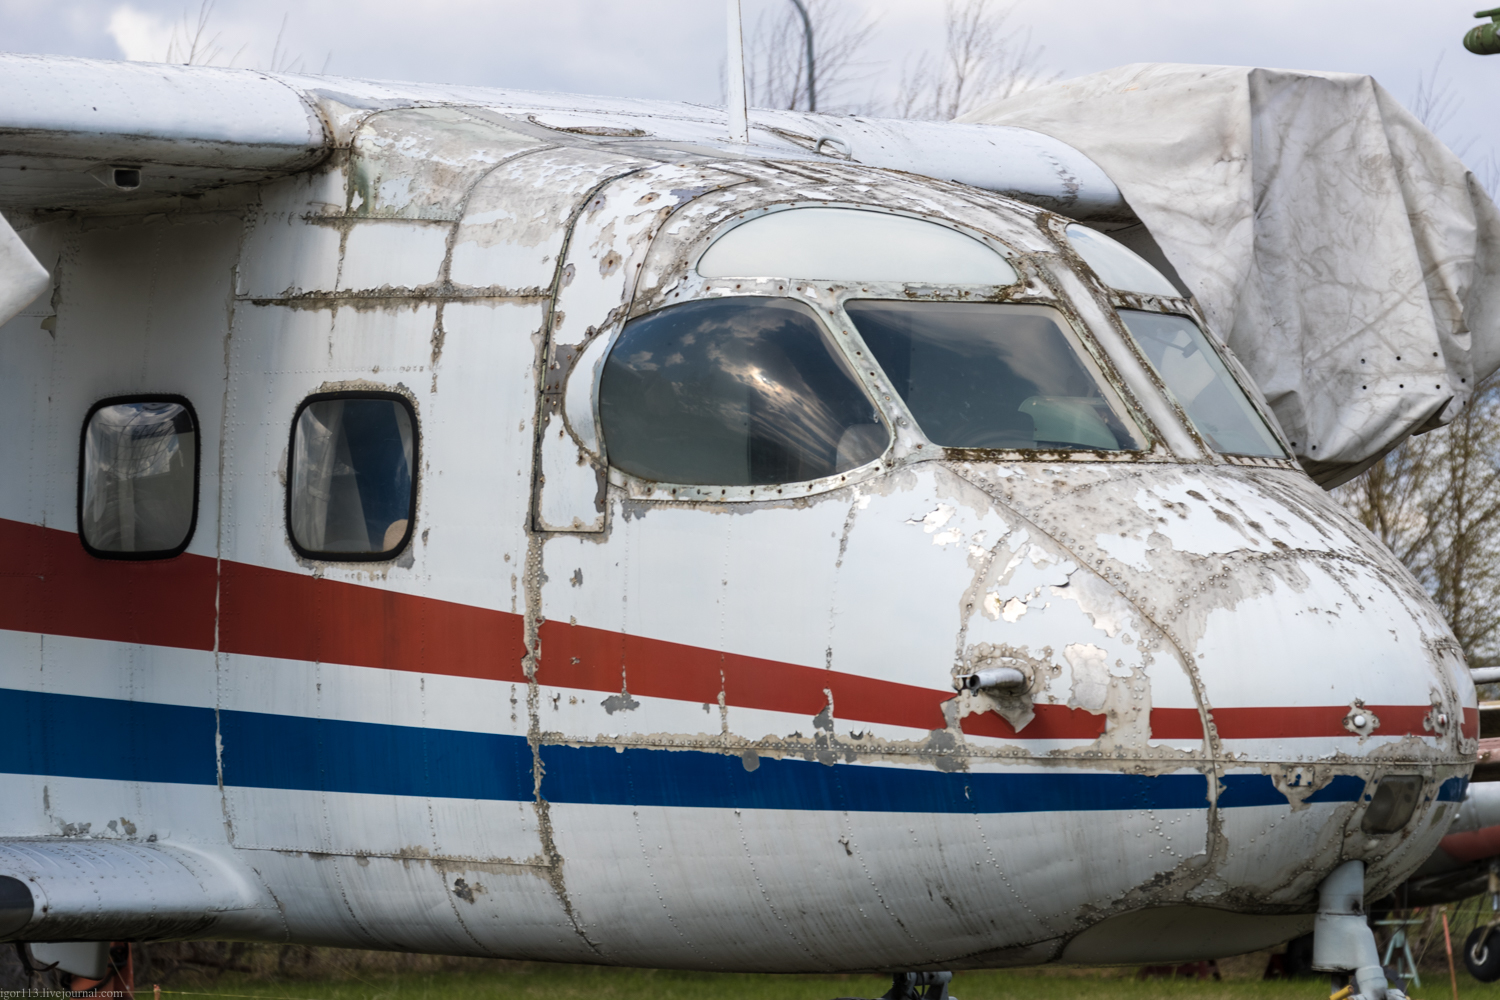 Авиамузей в Риге: легкий многоцелевой транспортный самолет Ан-14А 